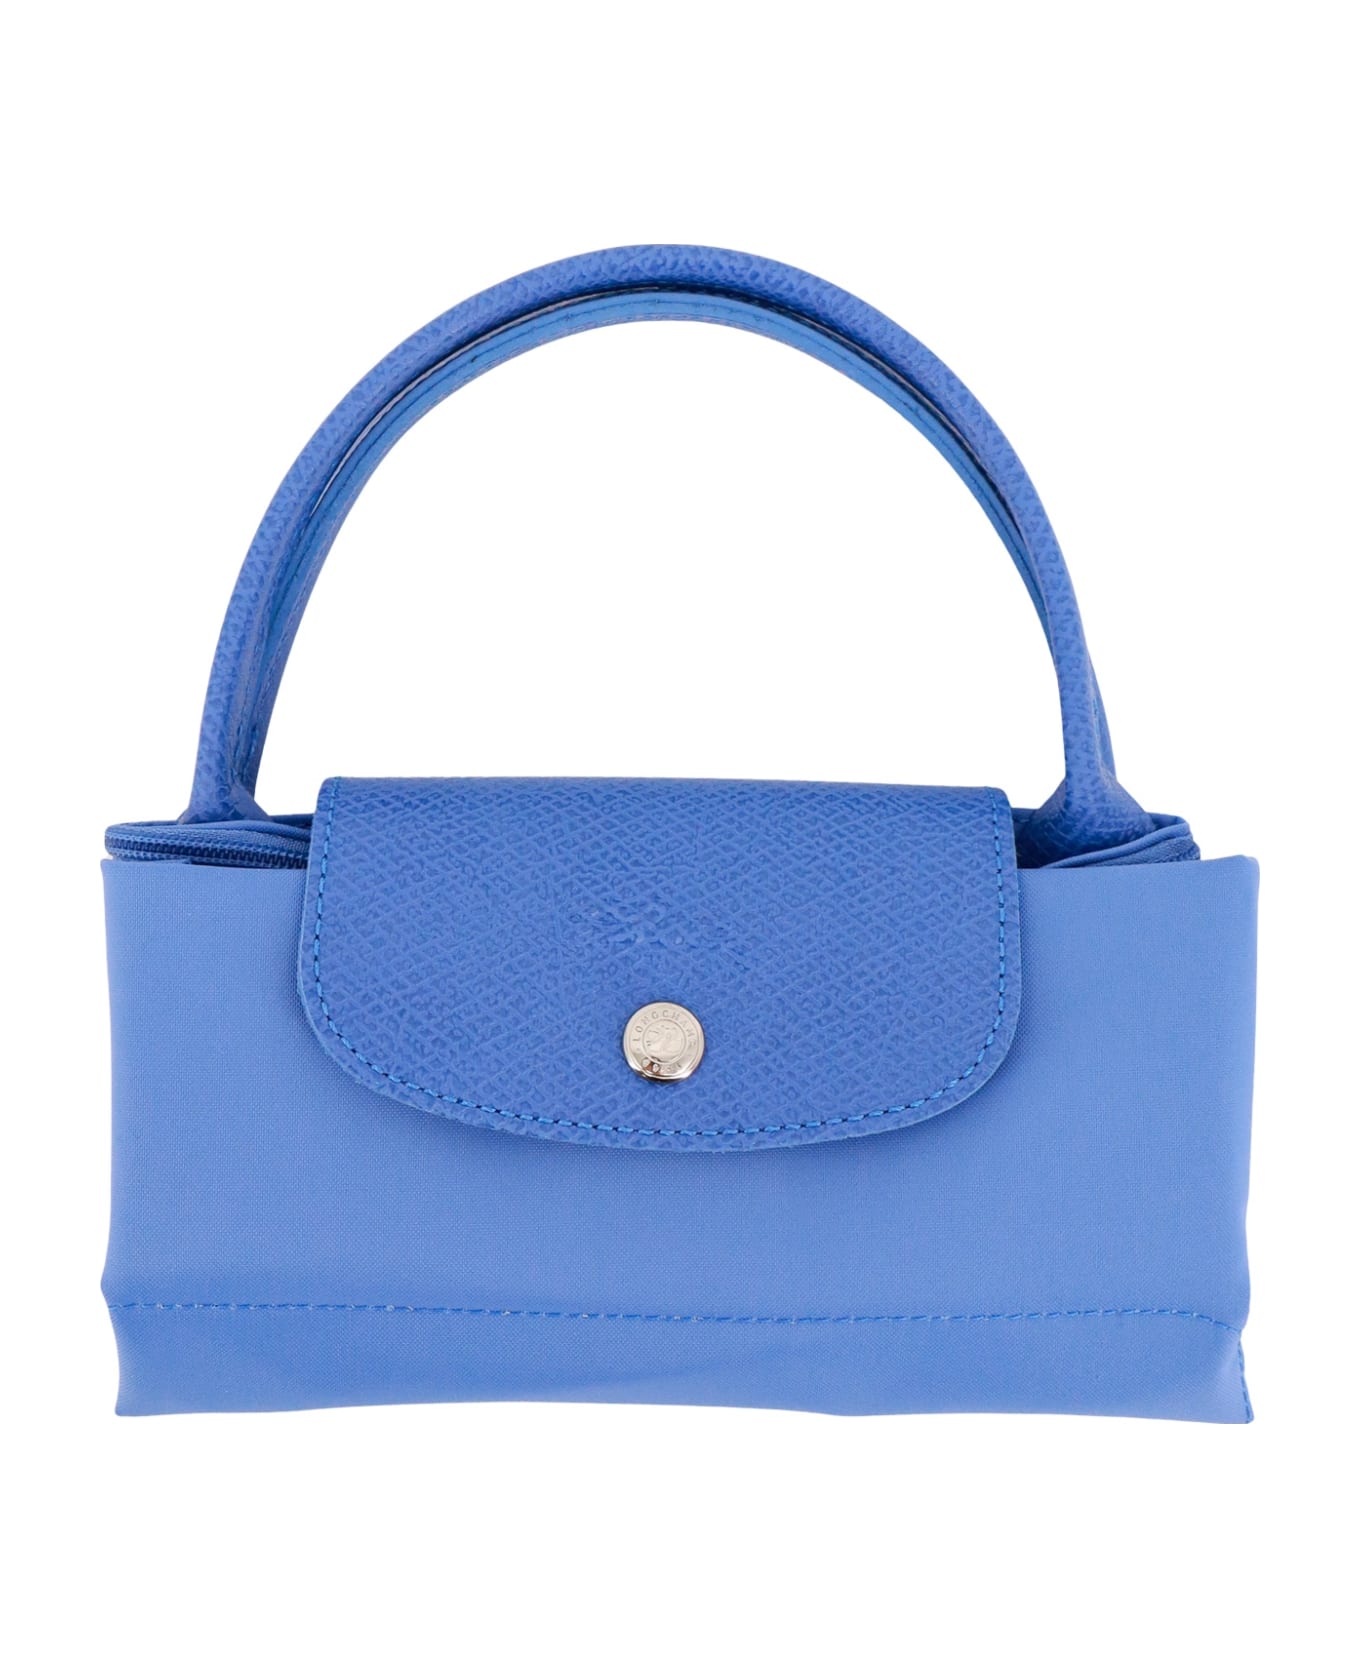 Longchamp Le Pliage Handbag - bleuet